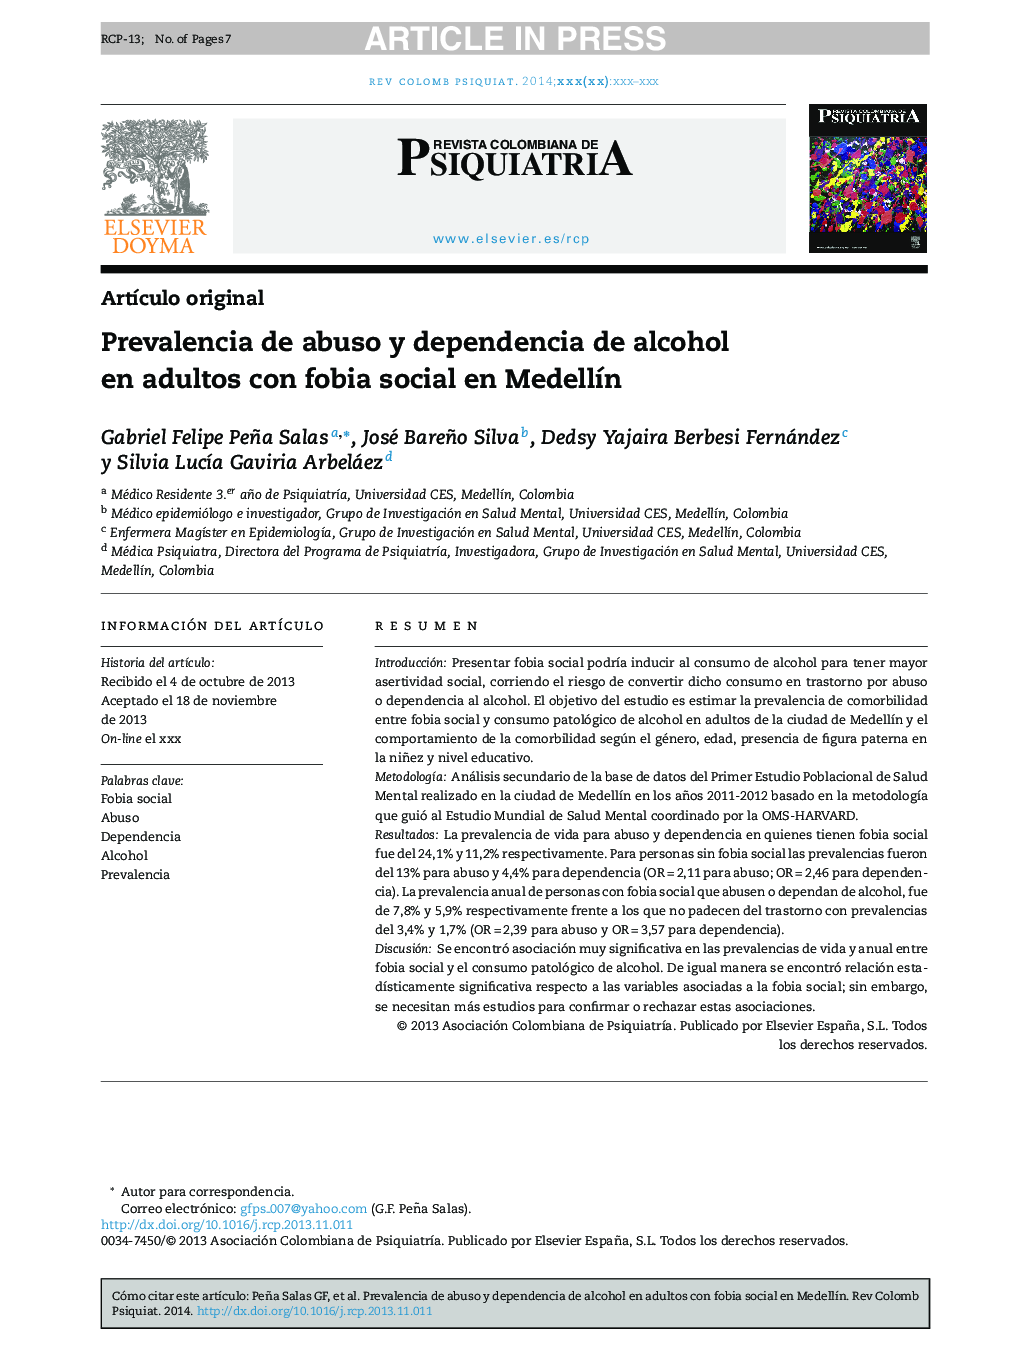 Prevalencia de abuso y dependencia de alcohol en adultos con fobia social en MedellÃ­n